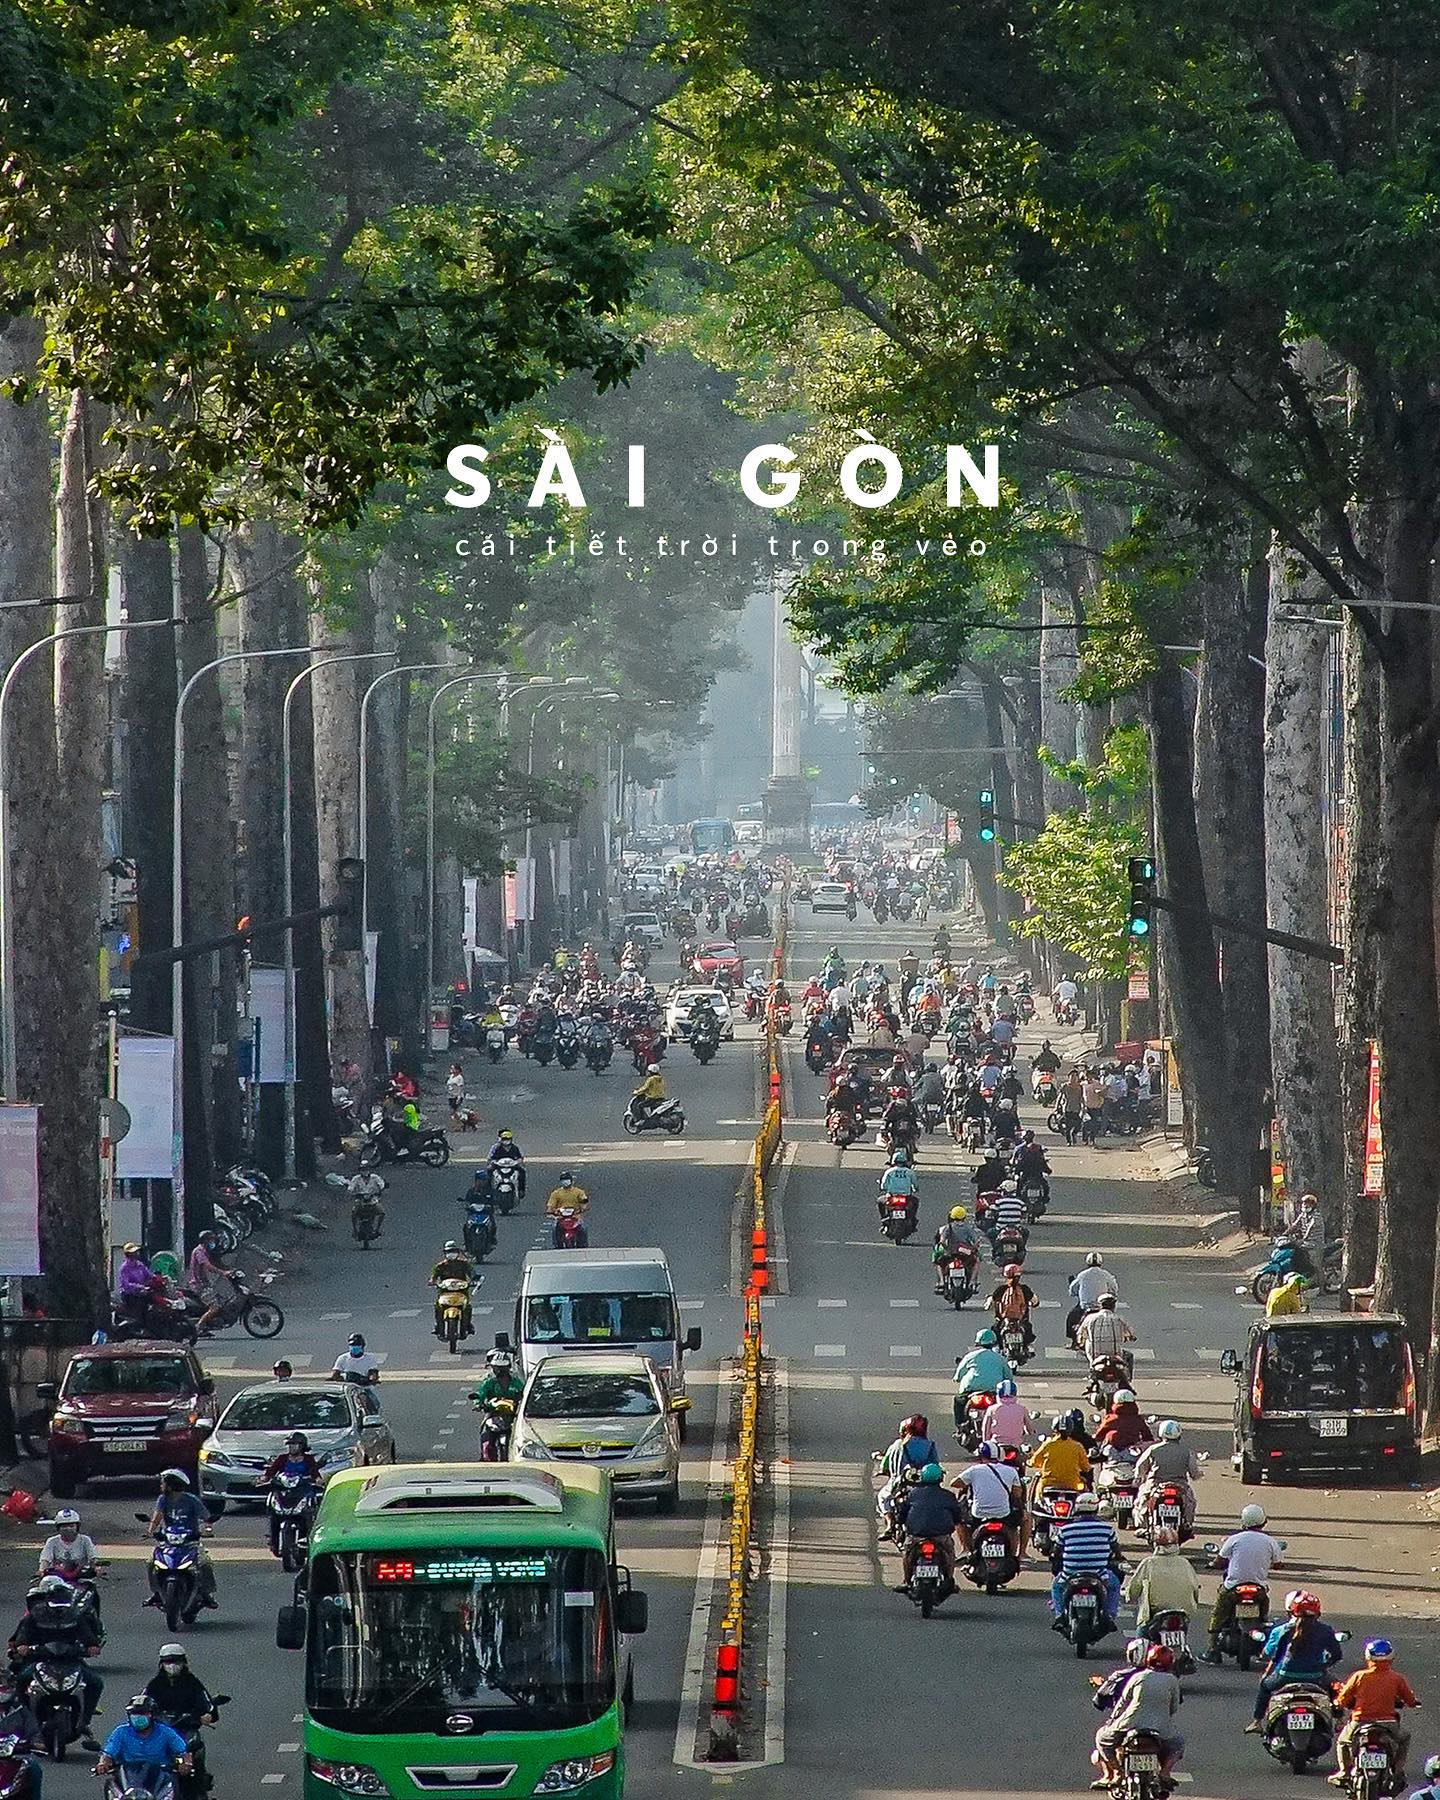 Hình ảnh Sài Gòn: Hãy cùng khám phá đến thành phố Sài Gòn bằng những hình ảnh tuyệt đẹp và đầy màu sắc. Được biết đến với những con đường phố sầm uất, những món ăn đặc trưng và những người dân nhiệt tình, Sài Gòn luôn là điểm đến hấp dẫn của du khách.